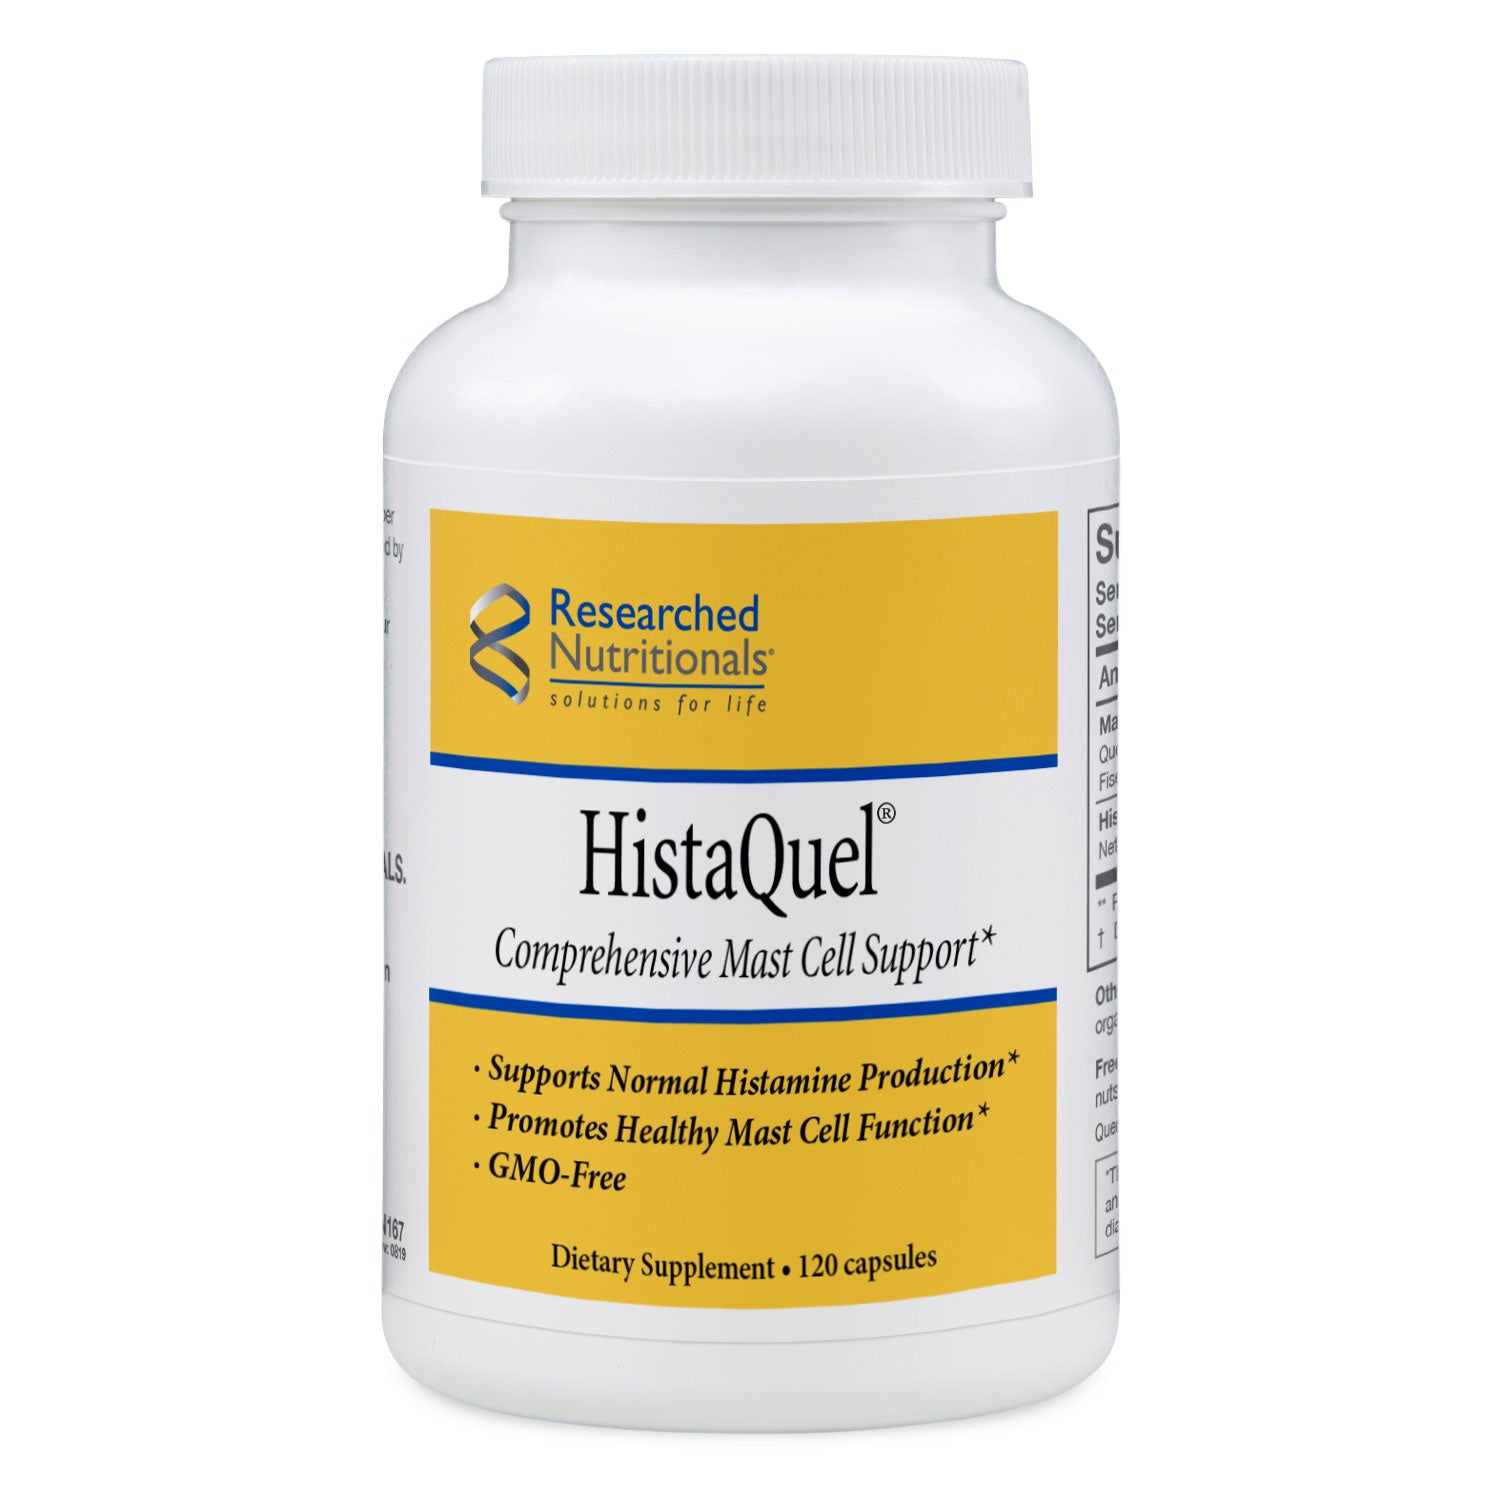 HistaQuel (120 cap)- Comprehensive Mast Cell Support